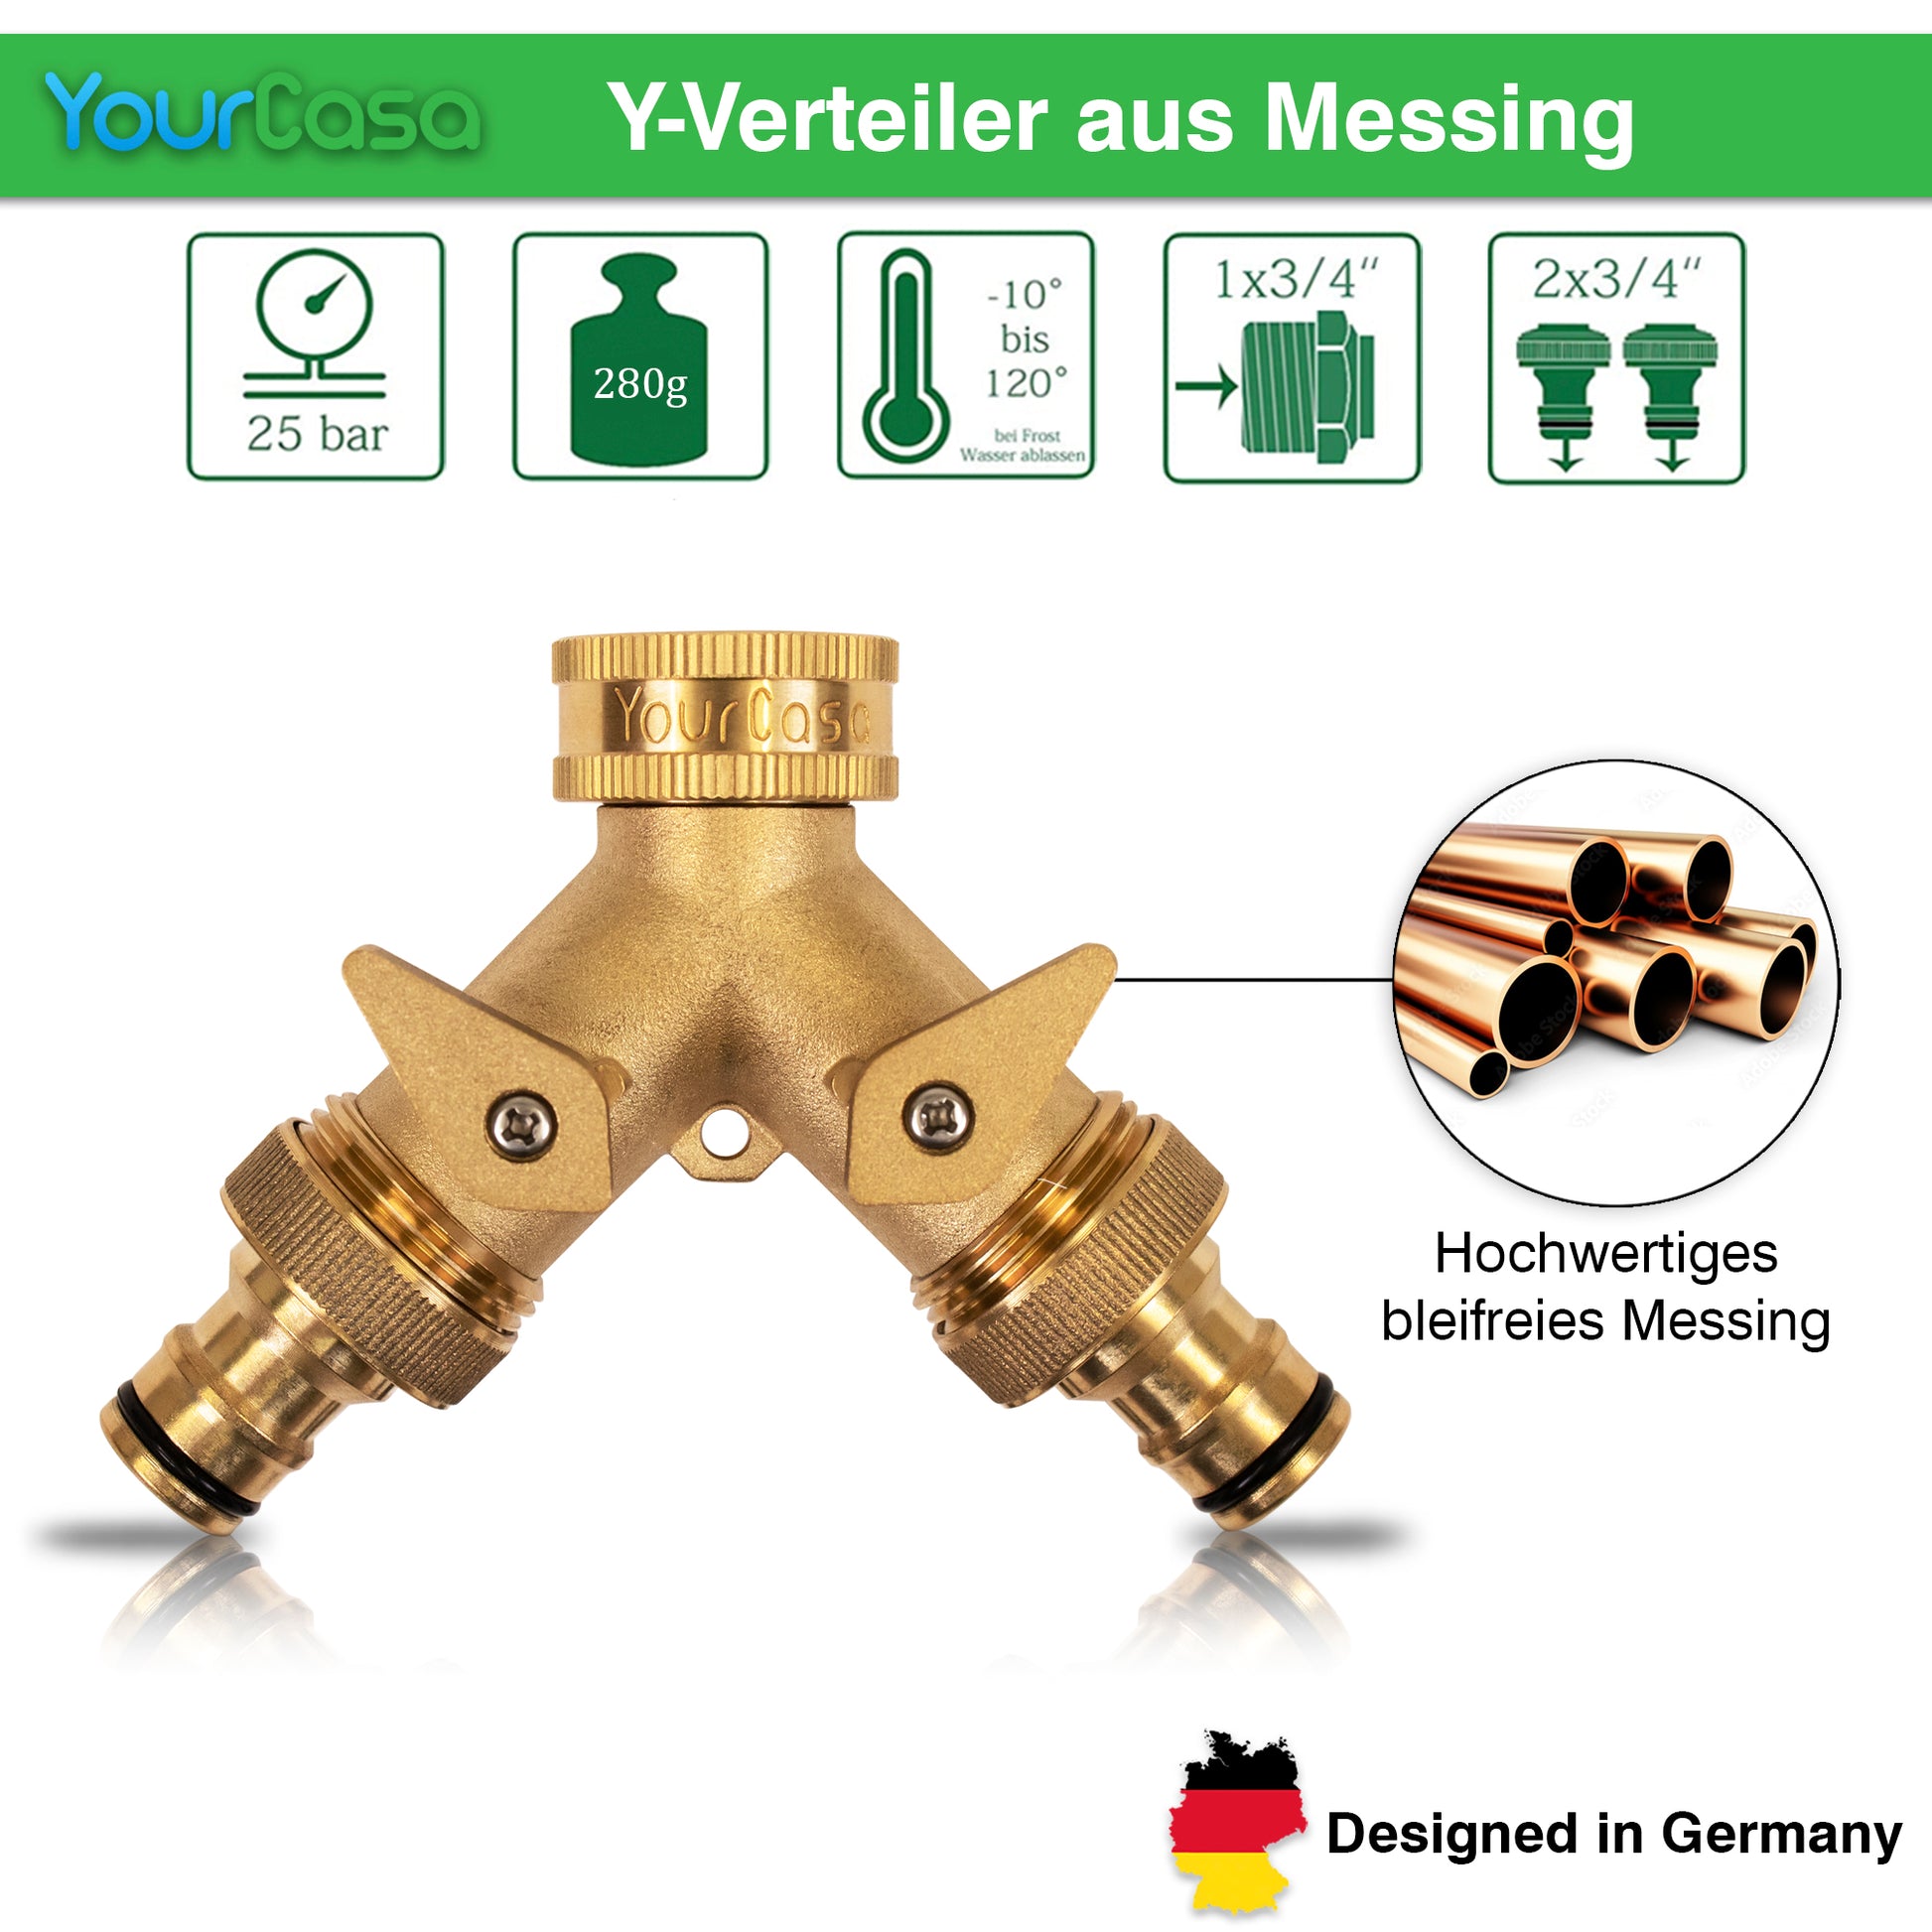 YourCasa Wasserverteiler Y-Verteiler [3/4 Zoll] aus Messing von yourcasa-de für Schläuche mit Spezifikation und "designed in Germany"-Label, ideal als Wasserhahn-Verteiler für die Gartenbewässerung.